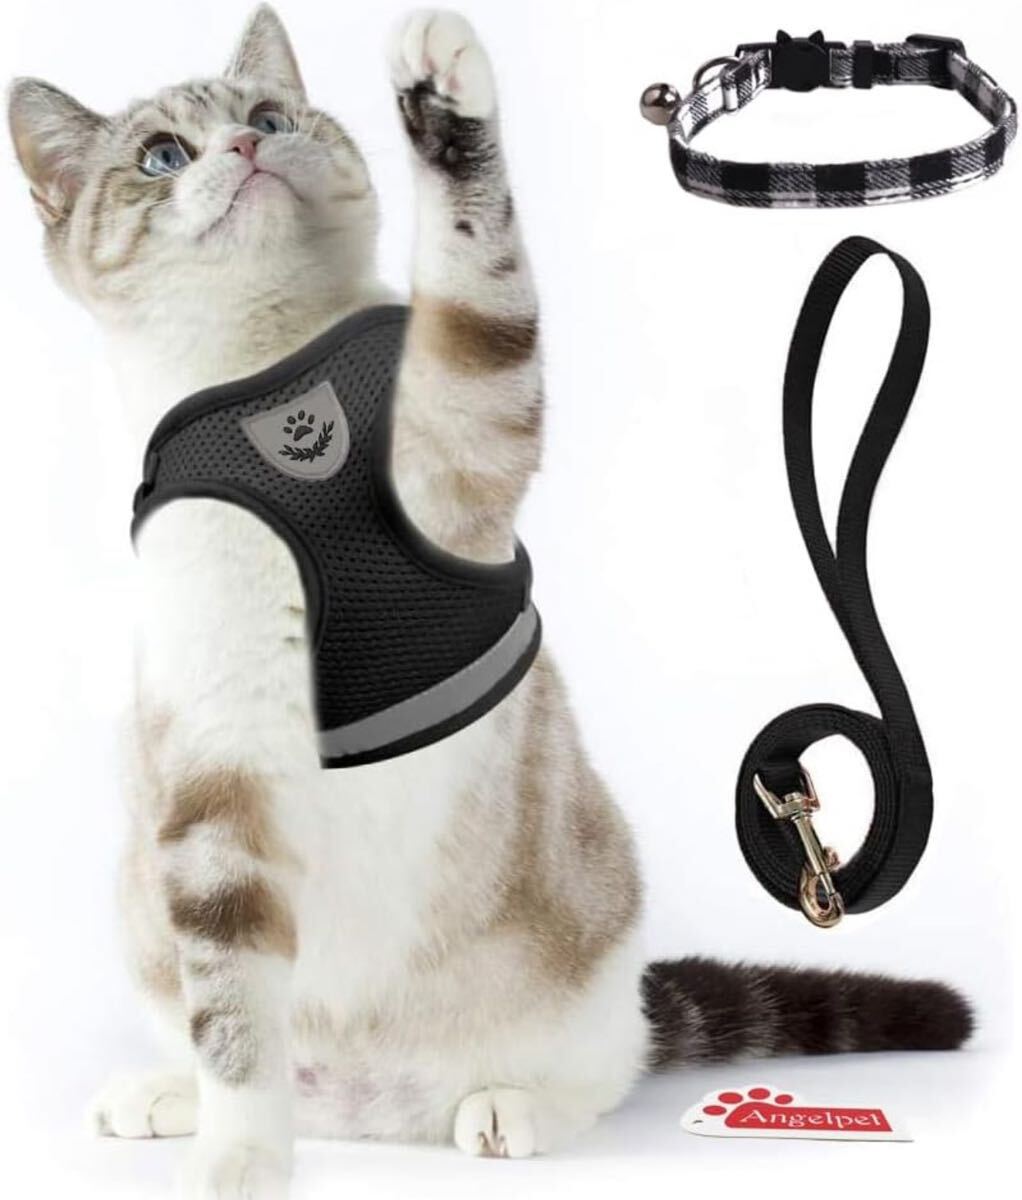 猫用 ハーネス 胴輪 ソフト胸あて リード付き 抜けない 夜反射 メッシュハーネス 通気性 超軽量 サイズ調節可能 (Lサイズ (x 1), ブラック)